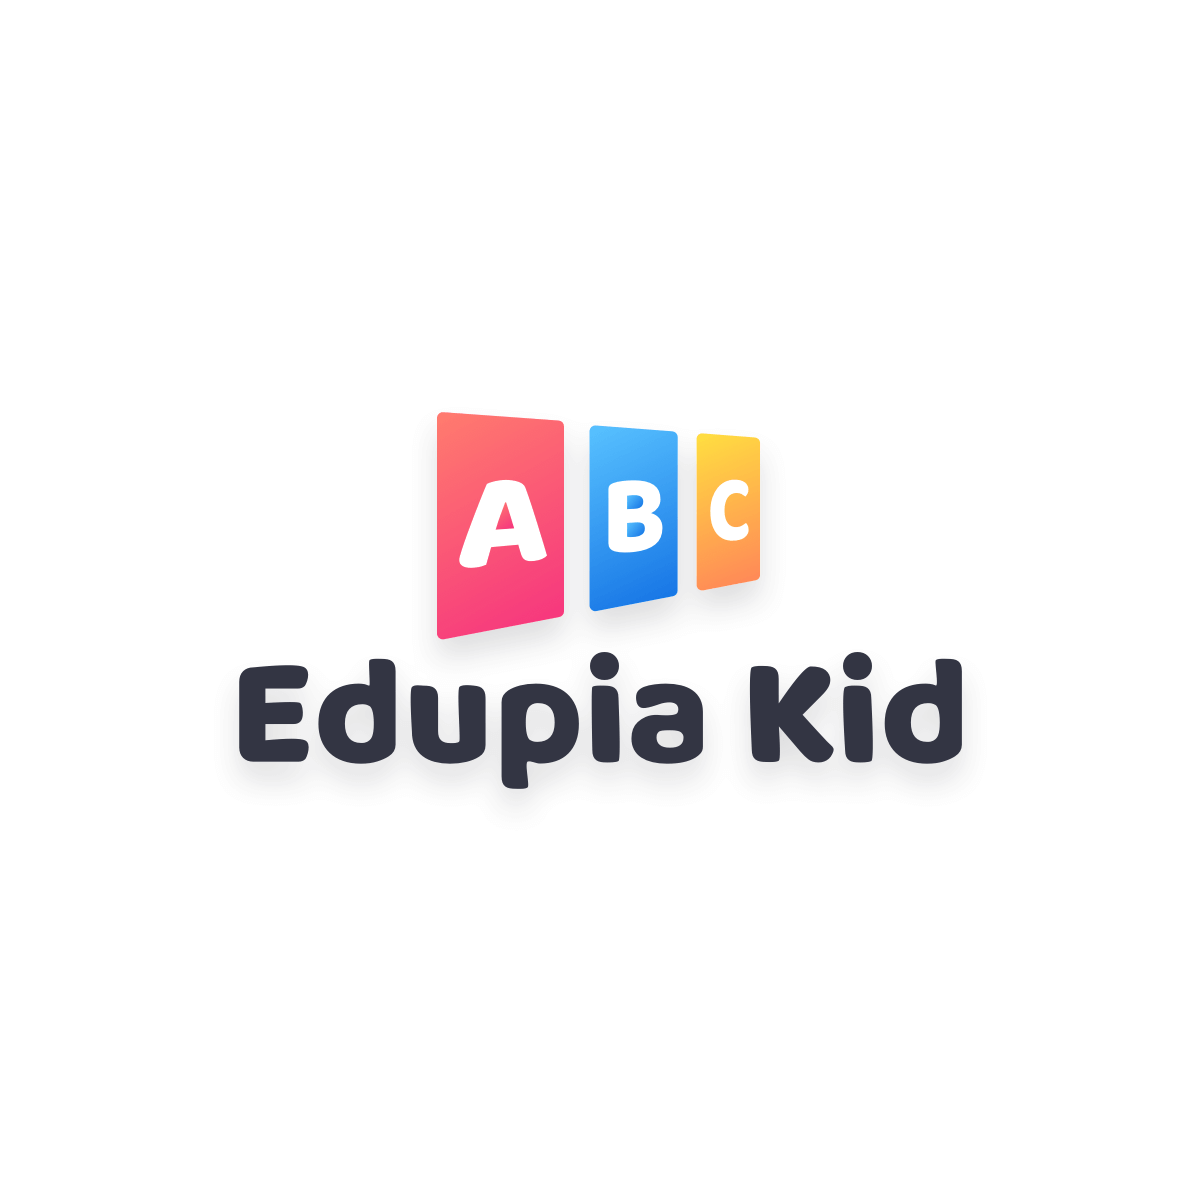 Edupia Kid - Học Tiếng Anh Như Cách Trẻ Bản Ngữ Học Tiếng Mẹ Đẻ